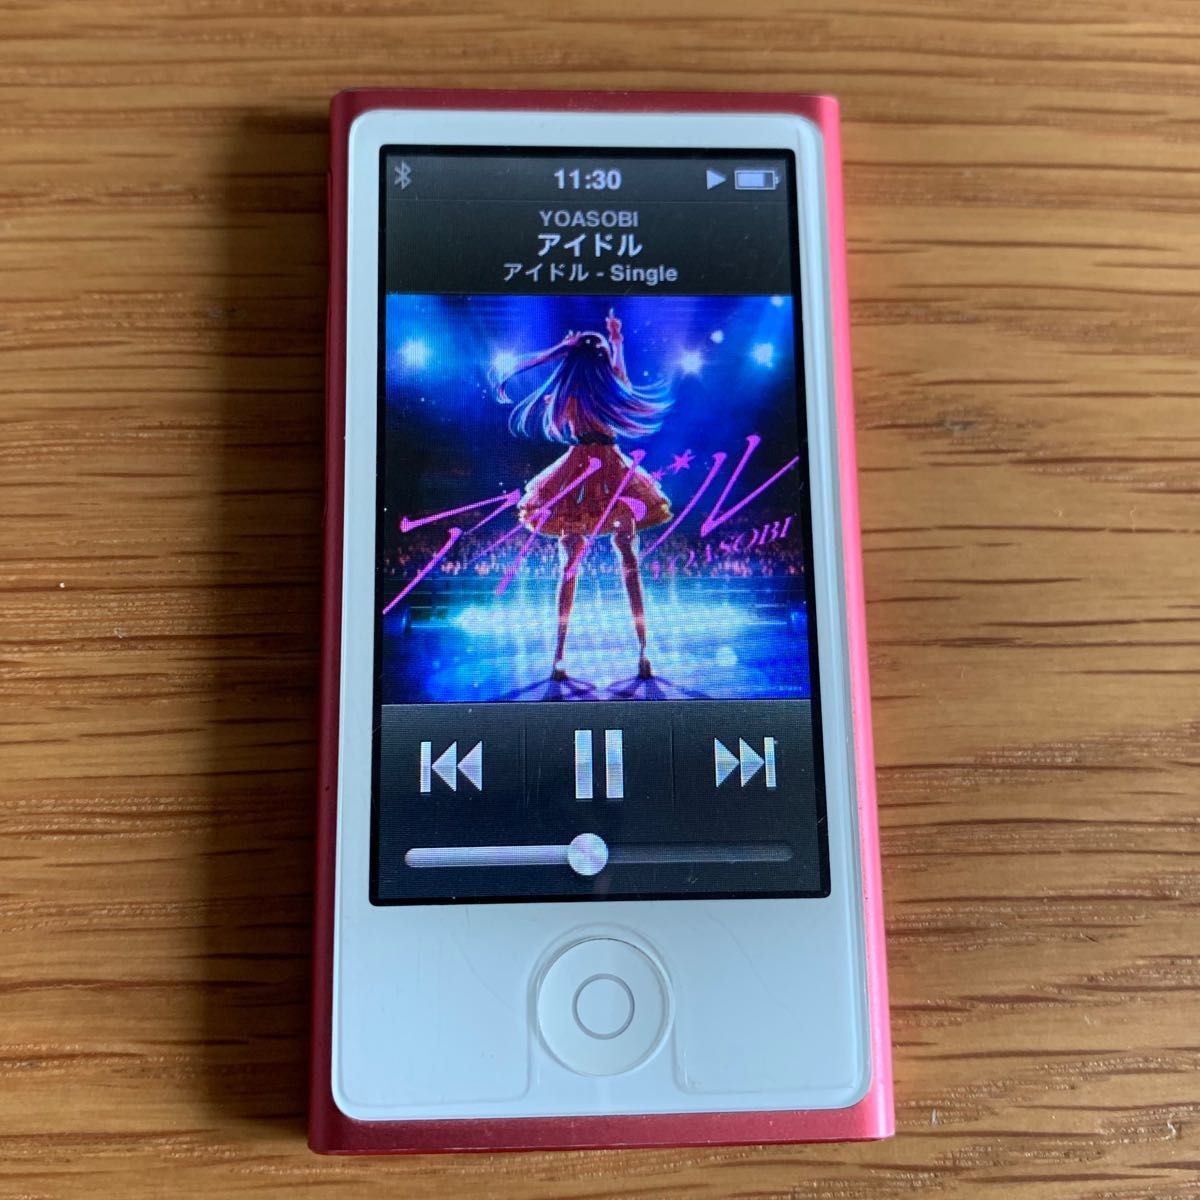 アップル iPod nano 第7世代 MD475J/A (16GB) ピンク Pink 中古品